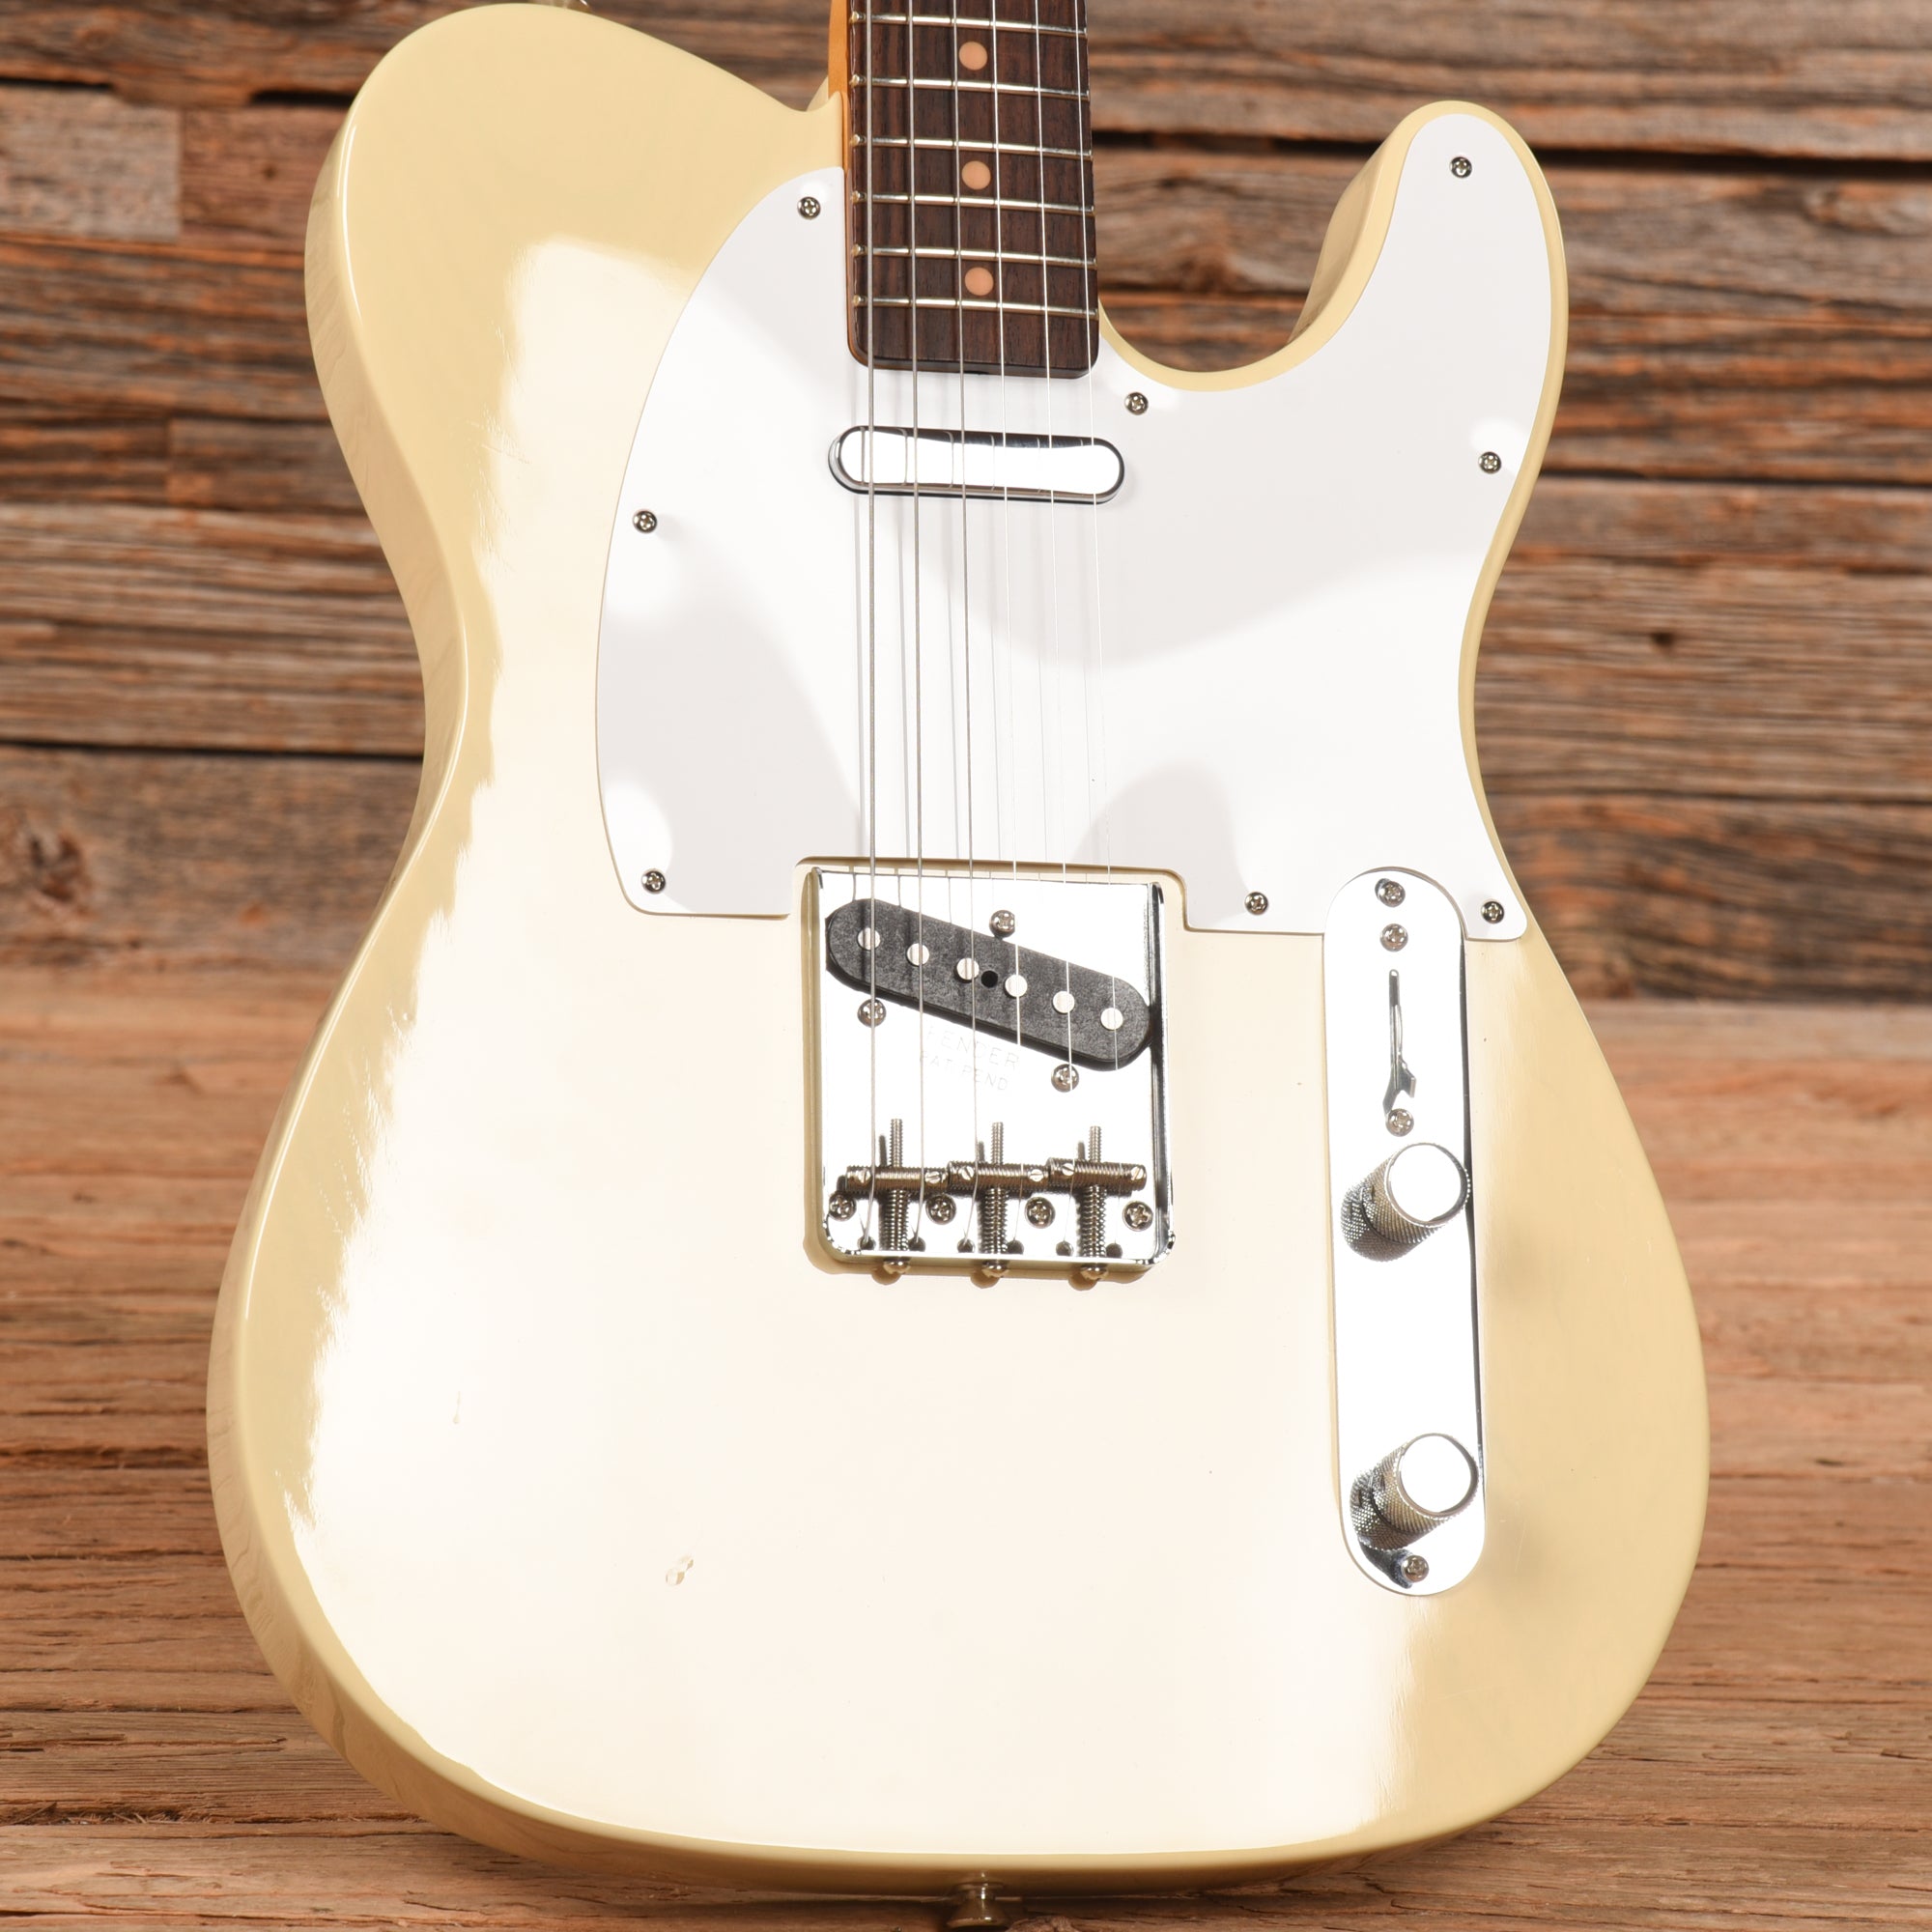 Fender Limited Edition American Vintage '62 Telecaster Vintage Blonde 2019